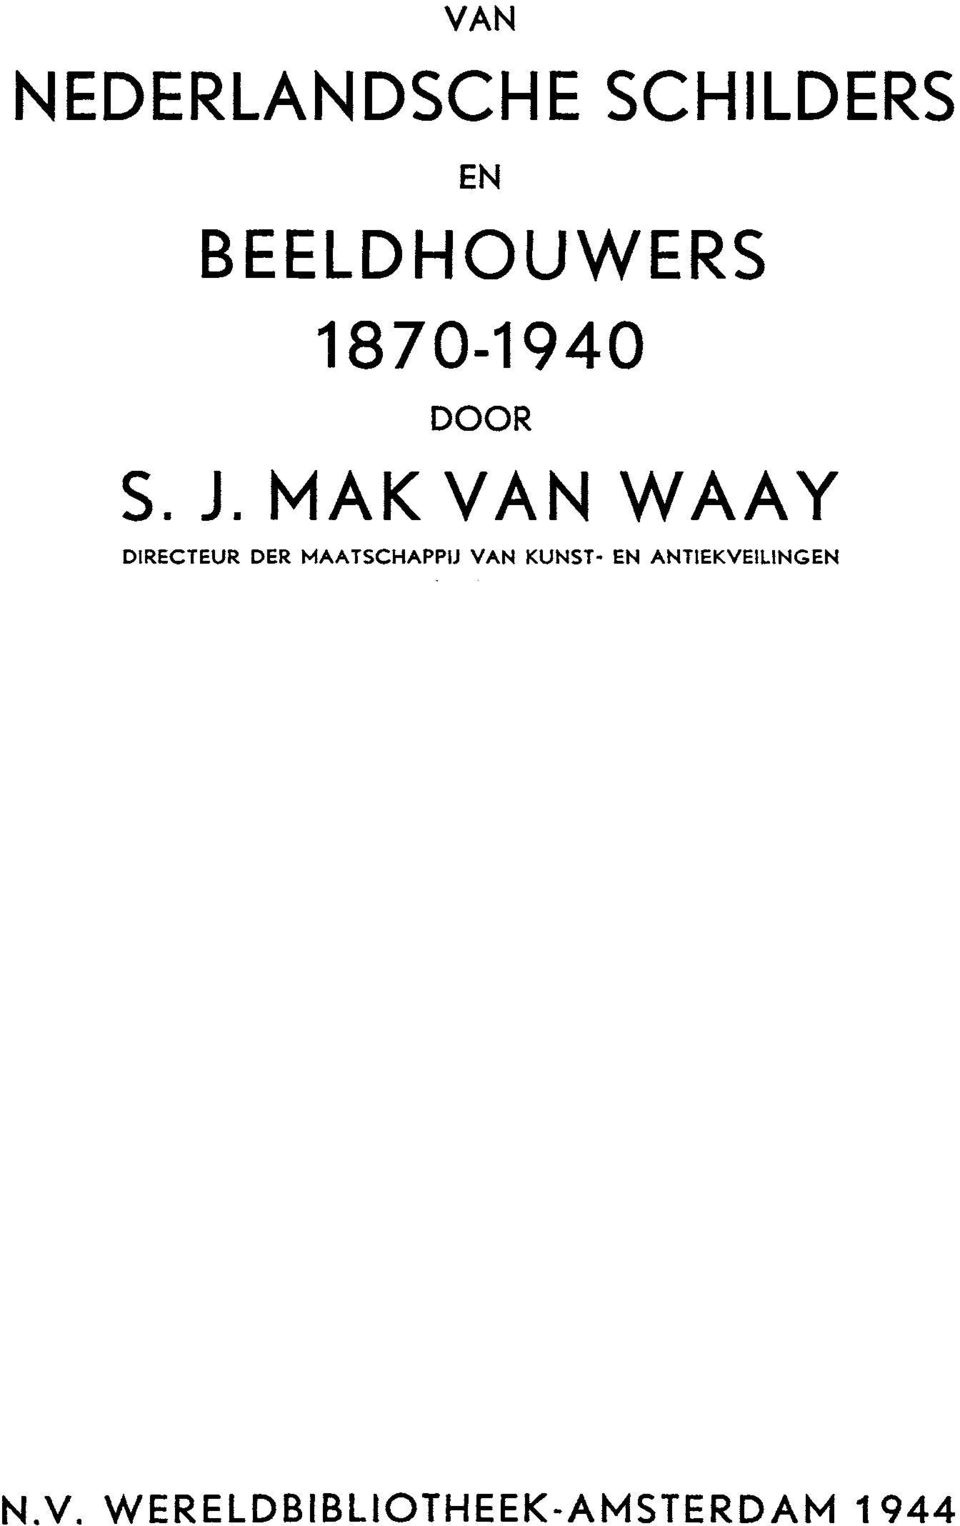 MAK VAN WAAY DIRECTEUR DER MAATSCHAPP11 VAN